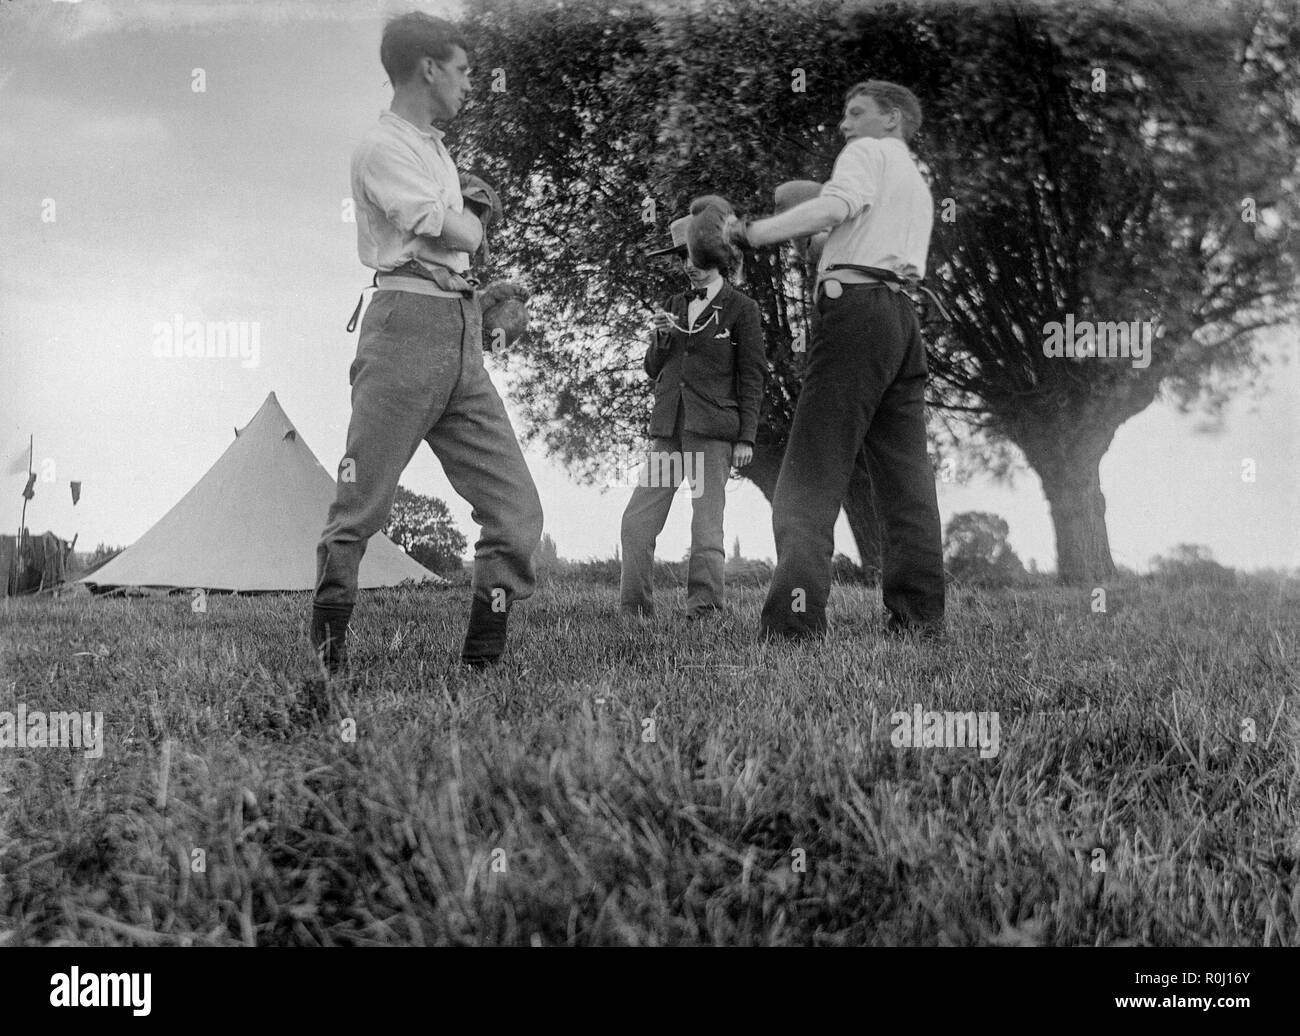 Edwardian fotografía en blanco y negro que muestra a dos niños o jóvenes, en un viaje de camping en un campo en Inglaterra, haciéndole frente a un combate de boxeo, vintage completa con guantes de boxeo. Un tercer niño actúa como árbitro y cronometrador. Foto de stock